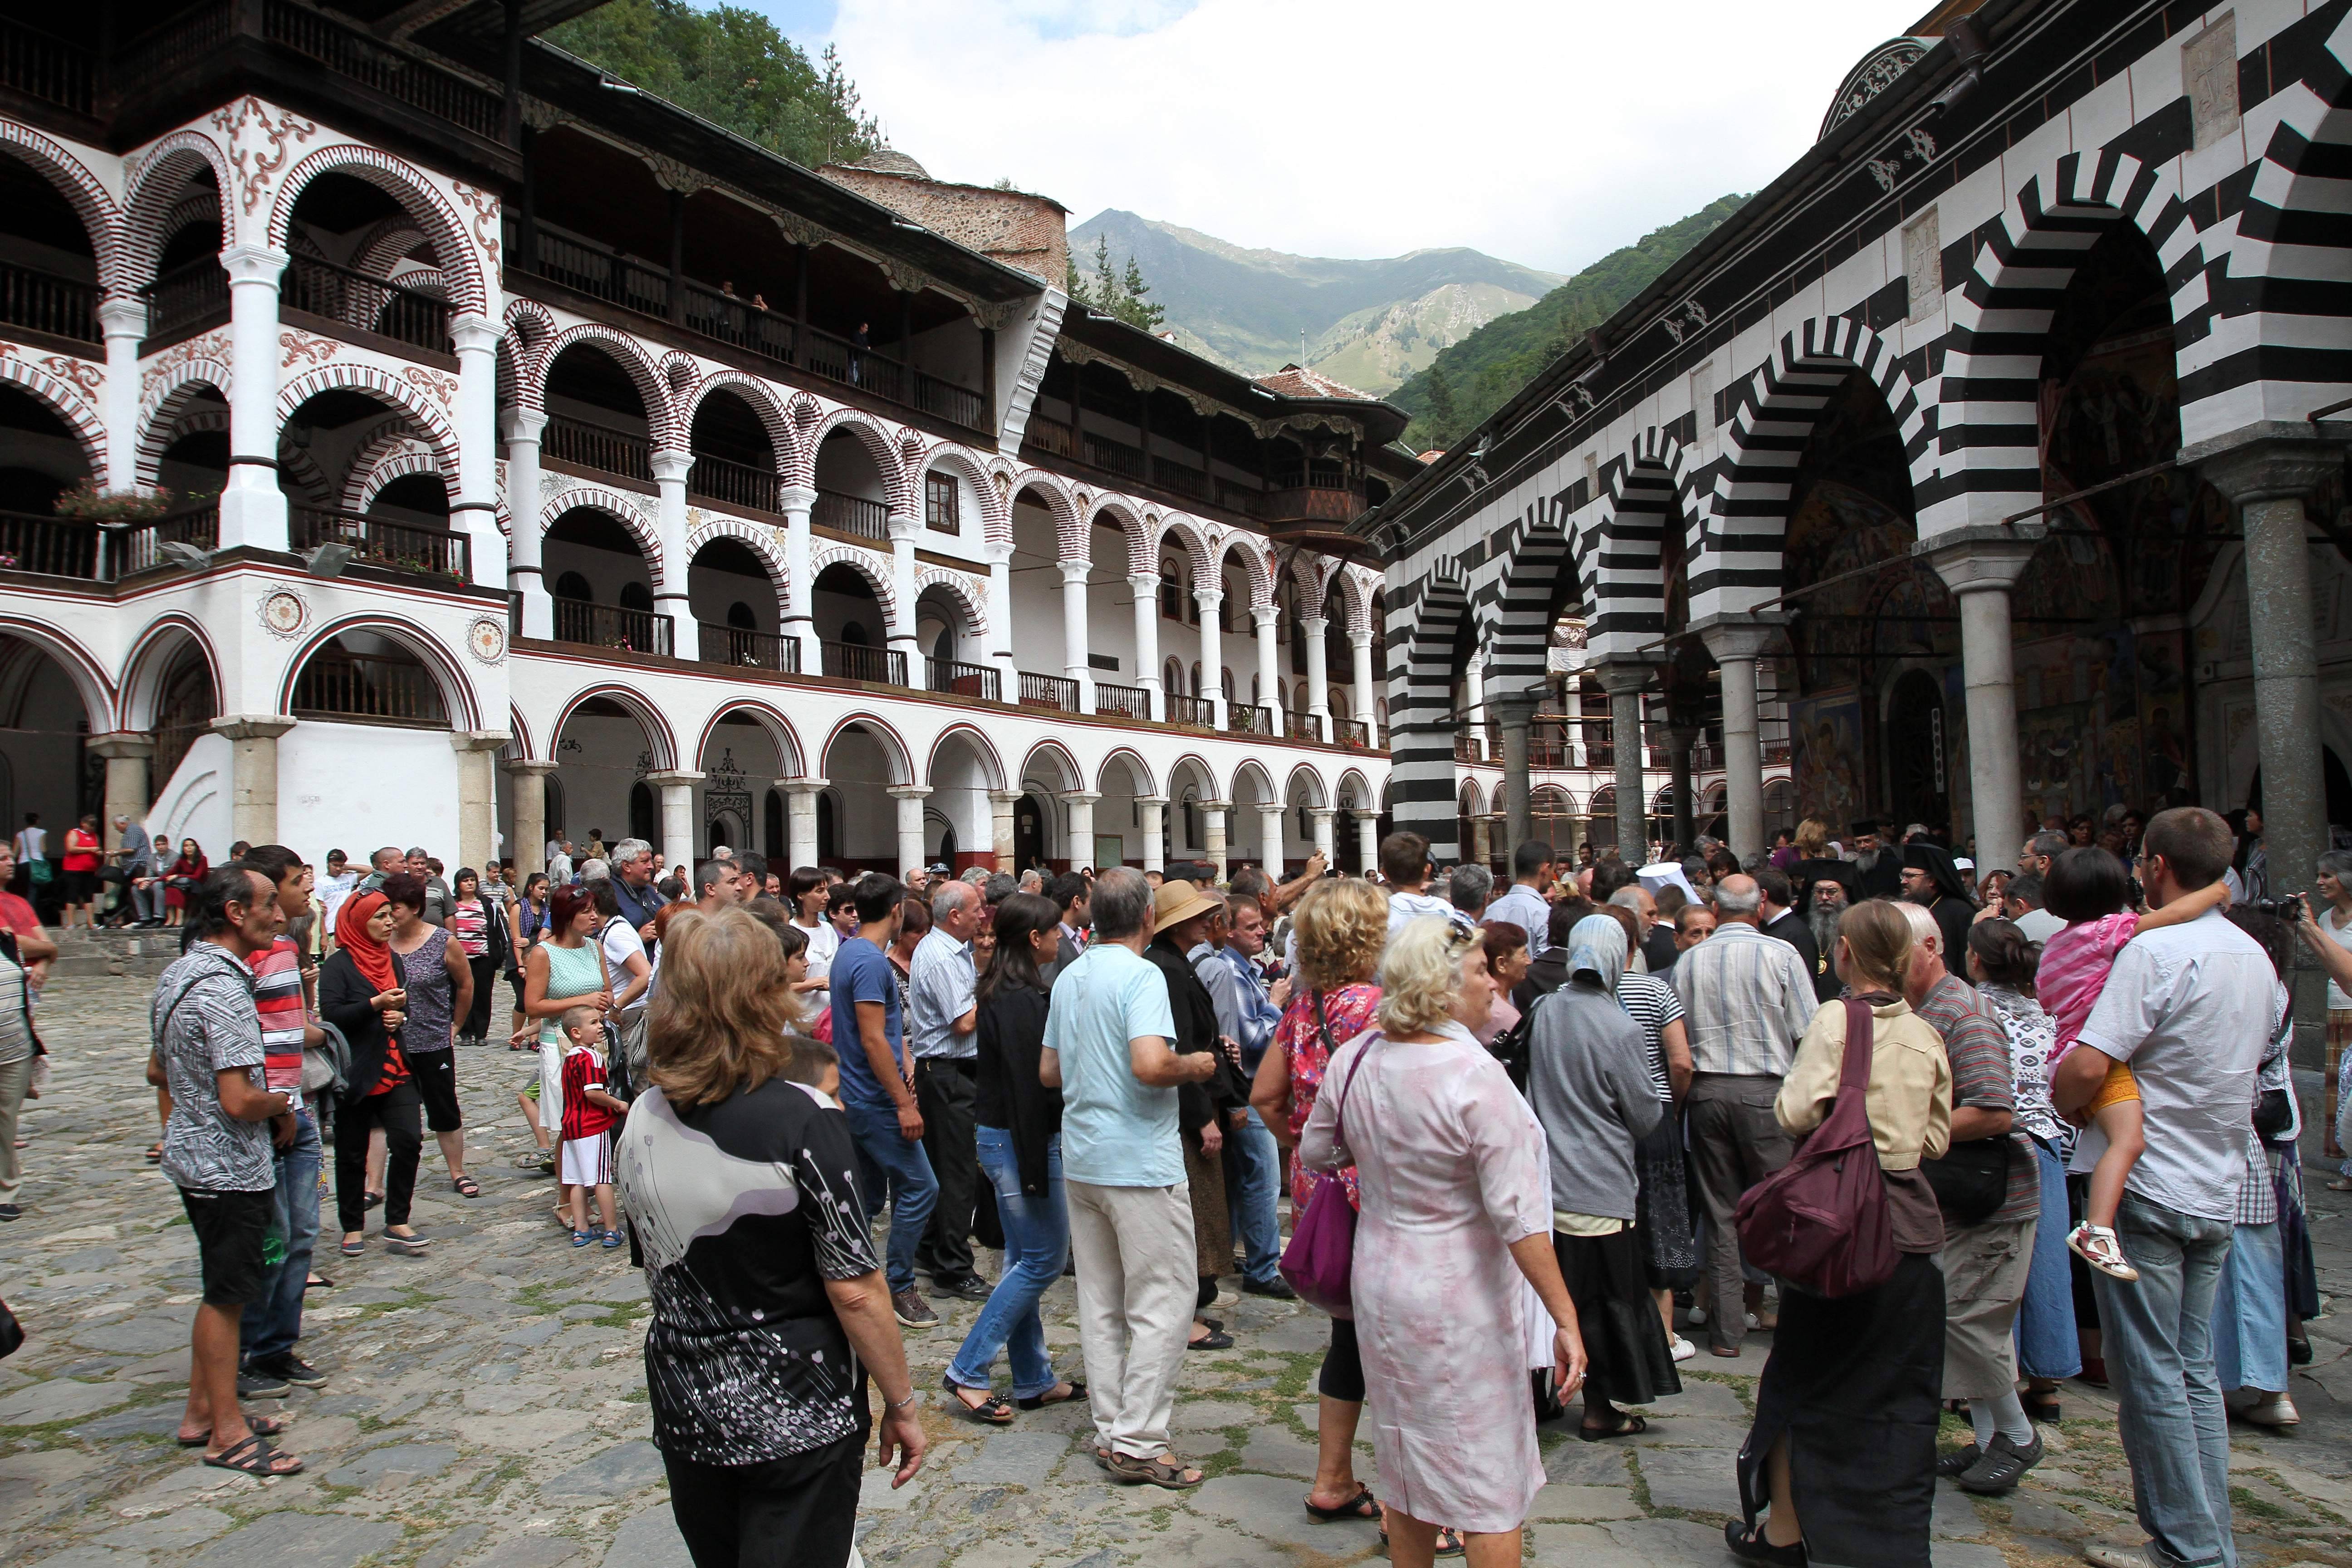  Поклонници от цял свят идват да зърнат едно от чудесата на България - Рилския манастир.